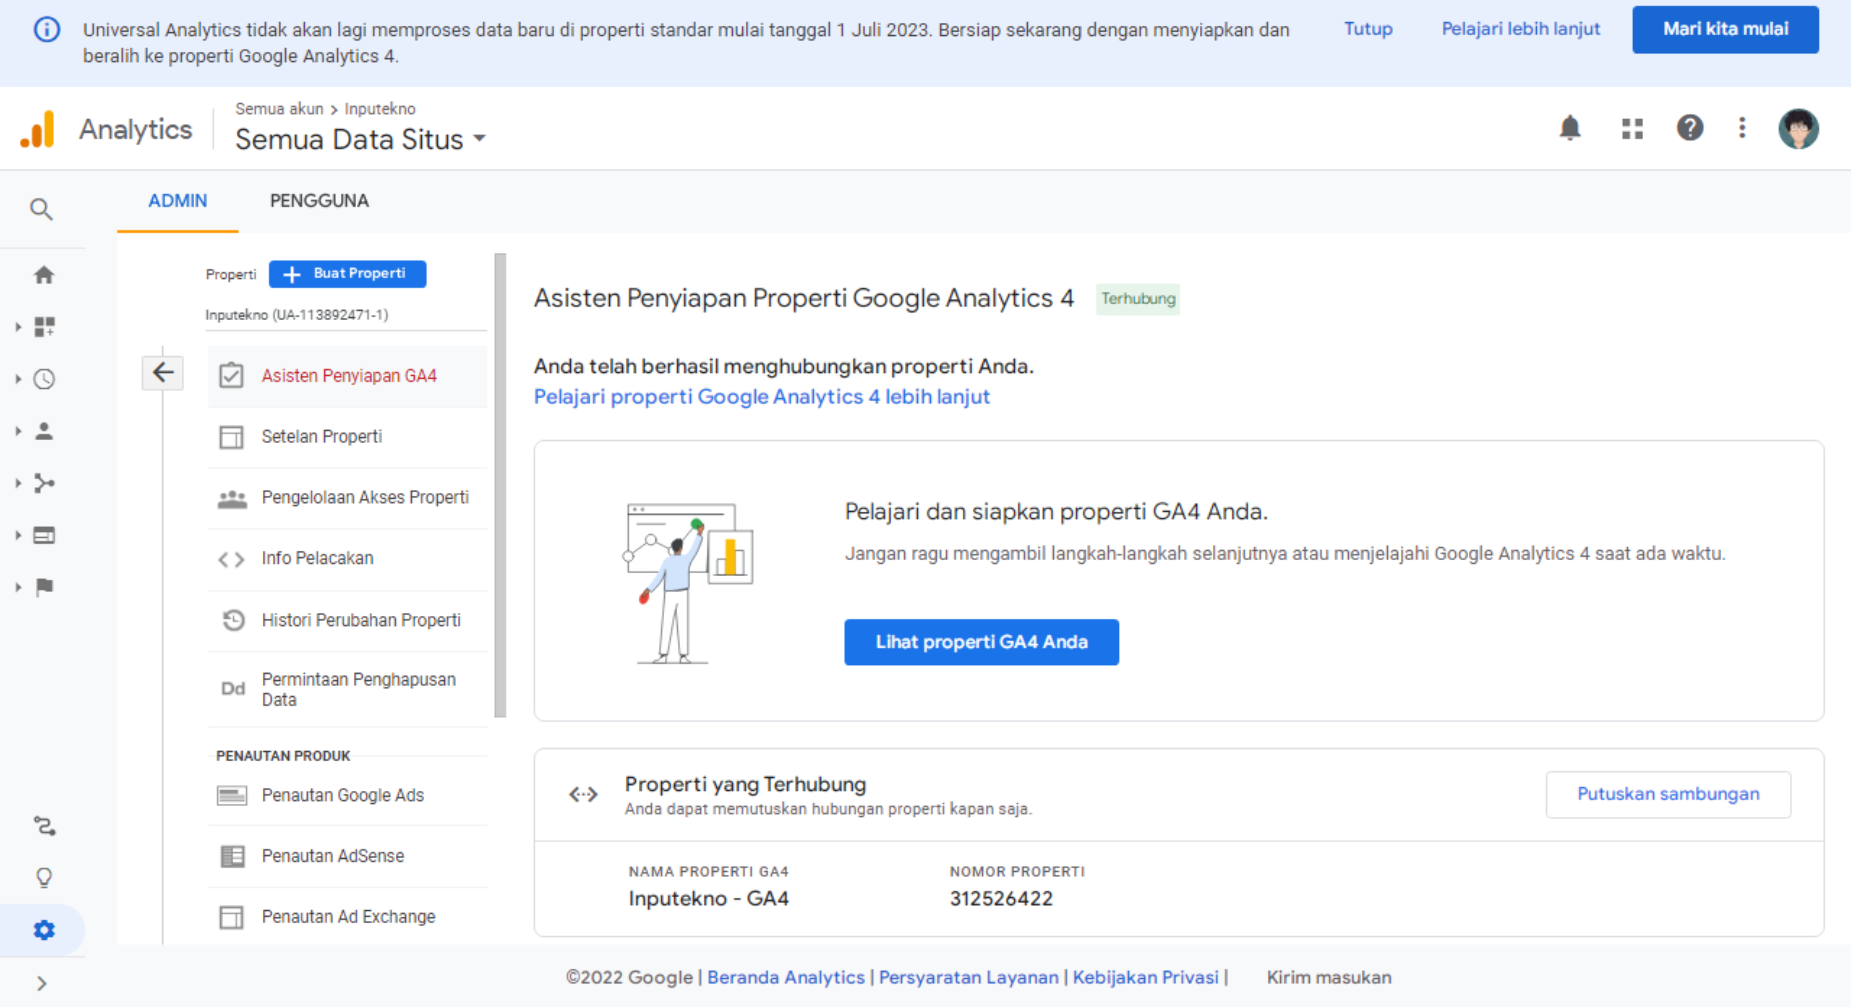 Upgrade Properti Google Analytics 4 (GA4)